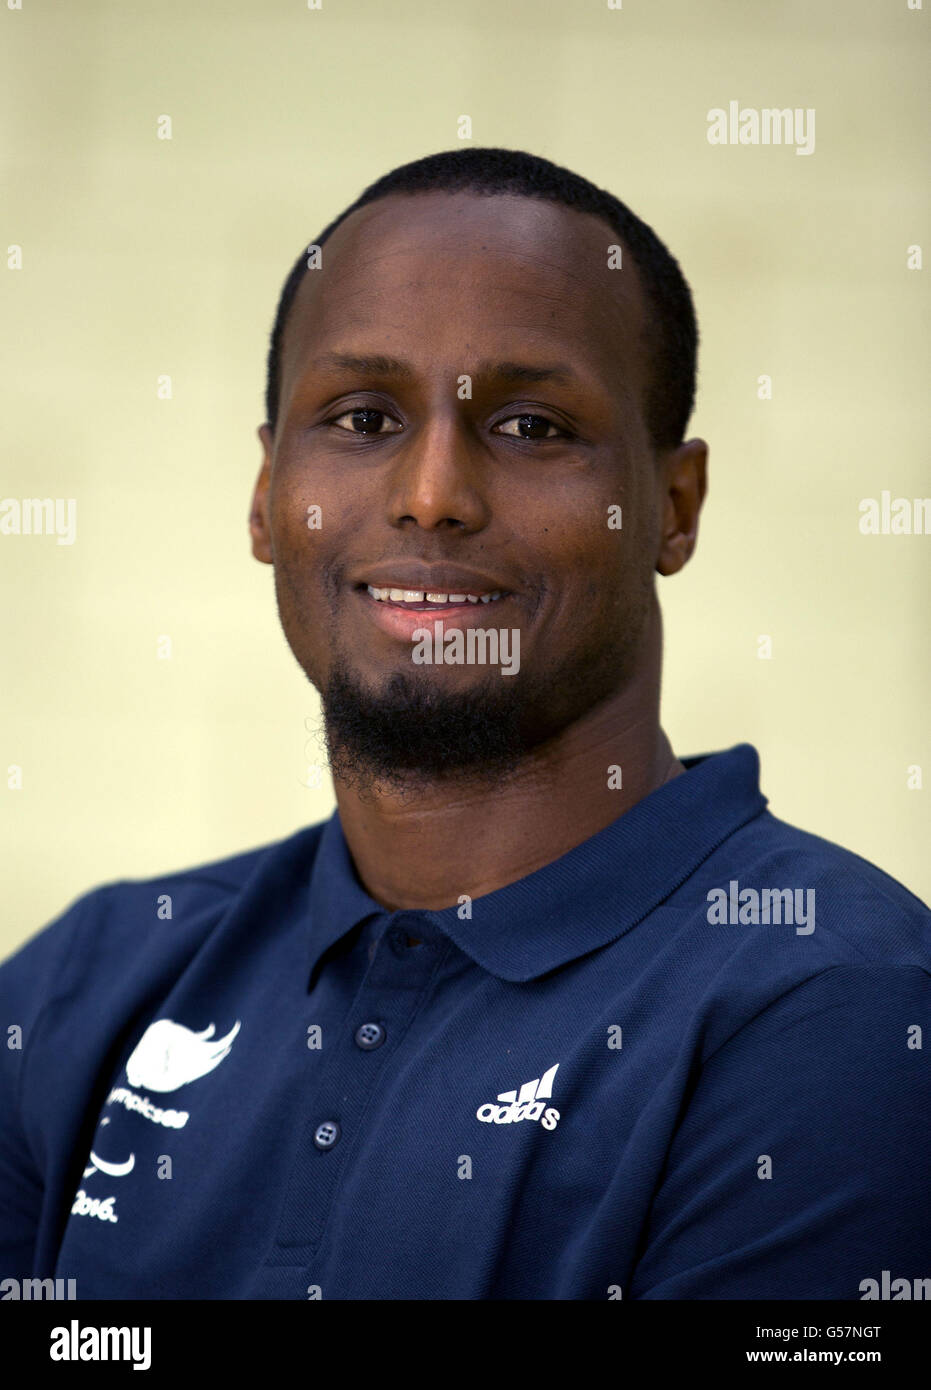 ParalympicsGB Abdi Jama, posa para una fotografía durante el anuncio del equipo en la Comunidad de Leicester Sports Arena. Foto de stock